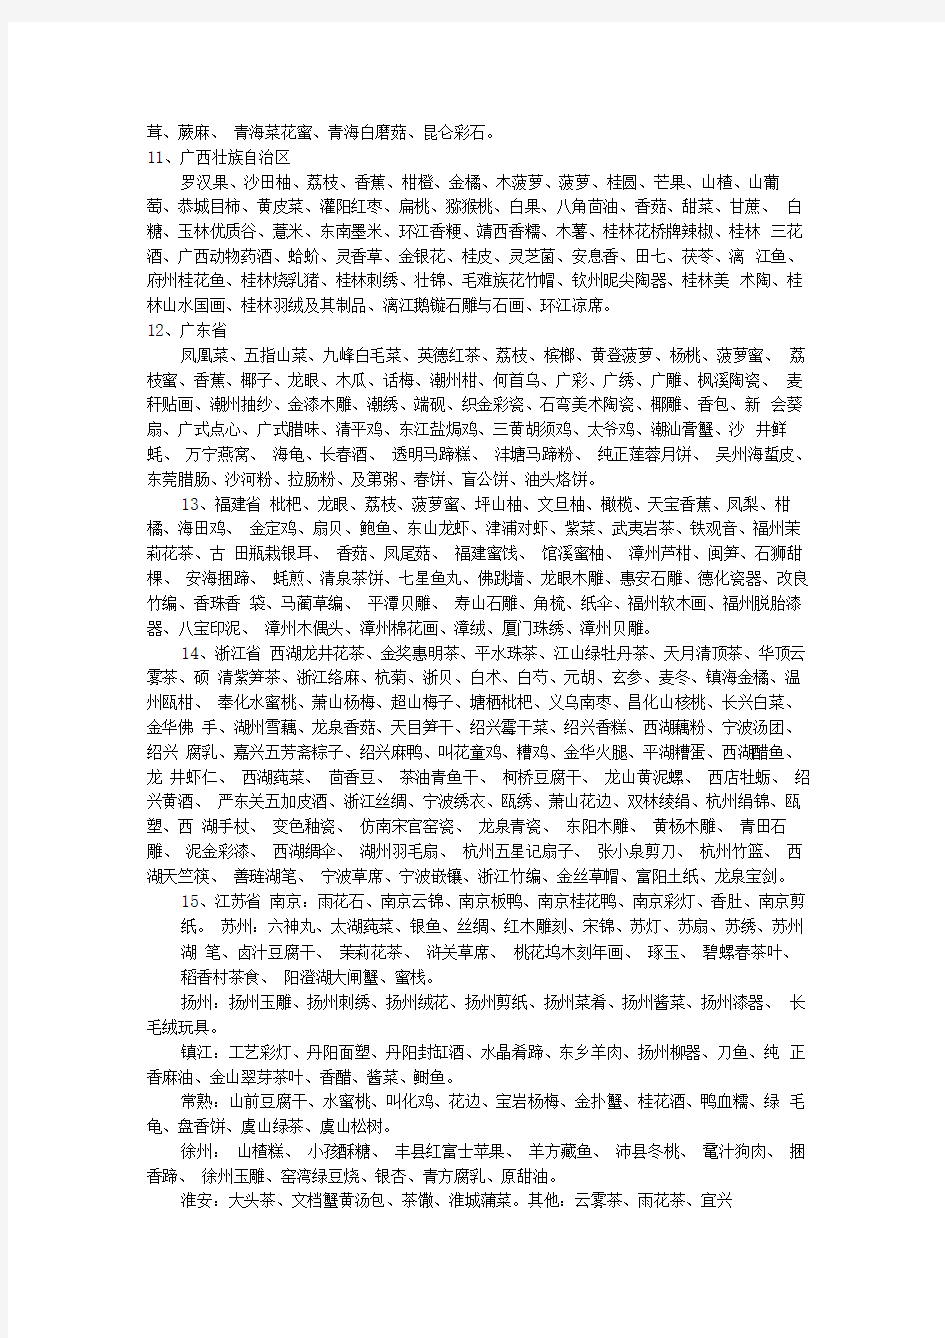 中国各地著名土特产总汇一览表